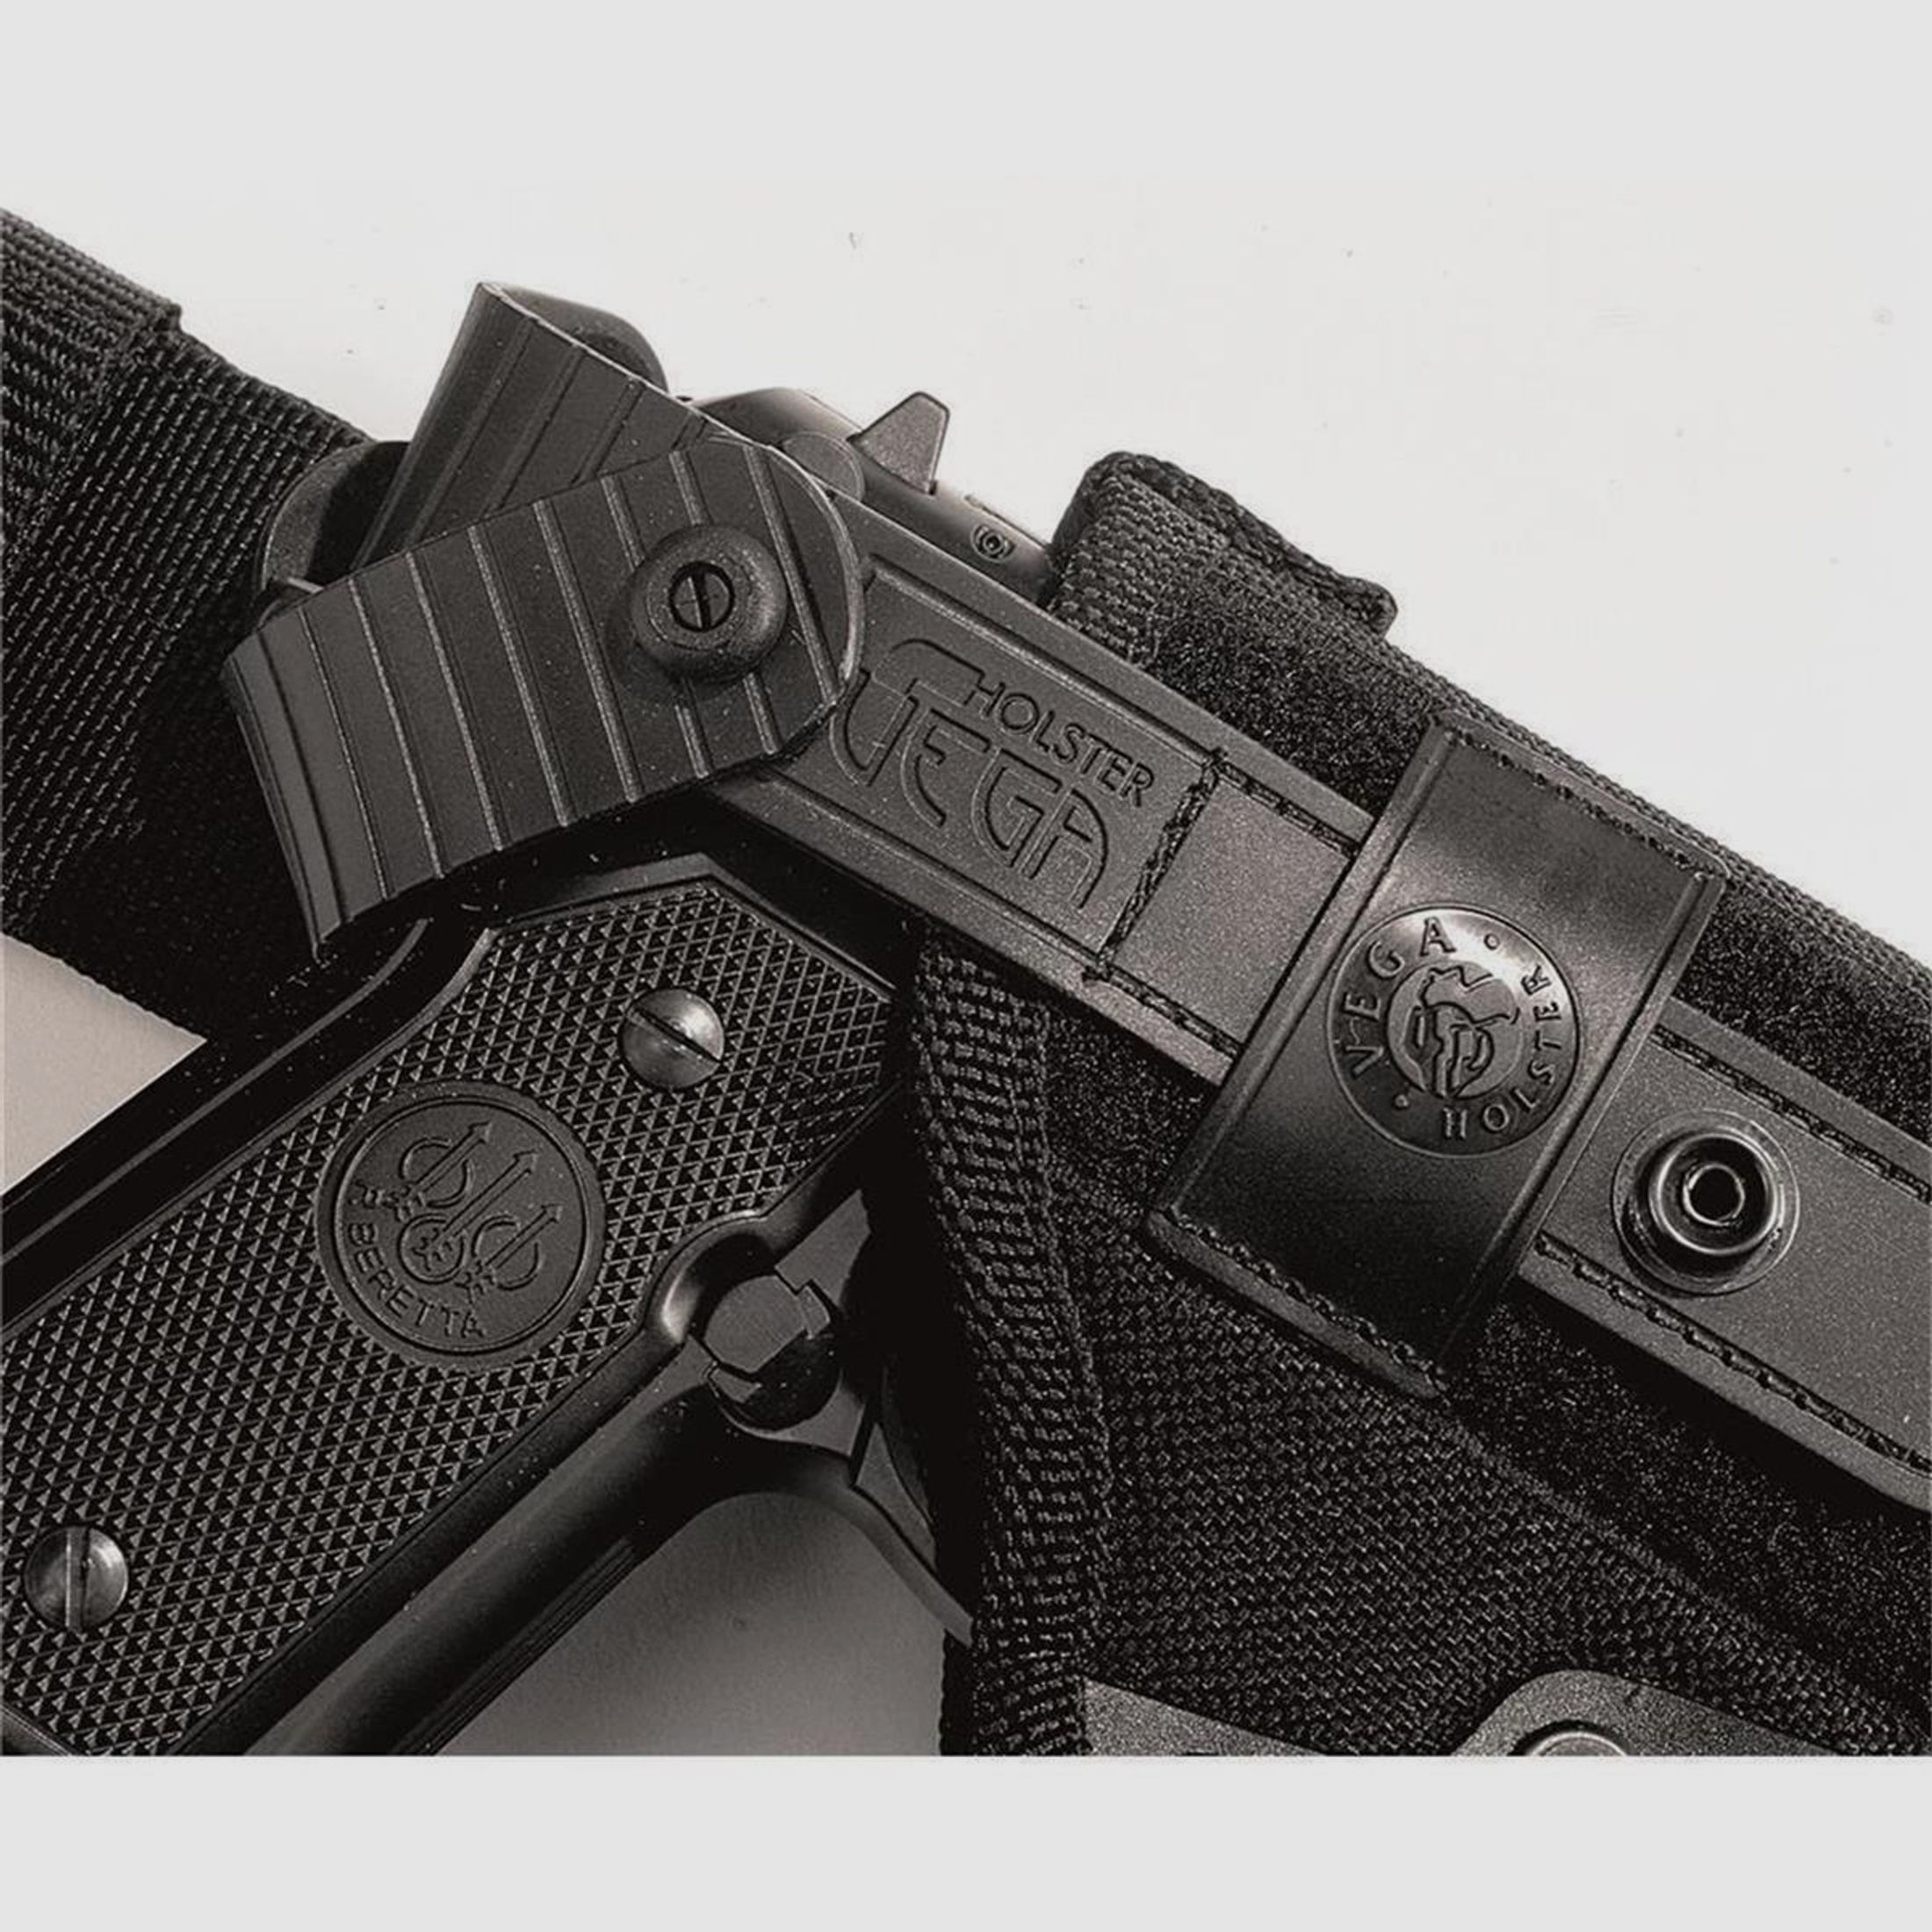 Taktisches Oberschenkelholster mit doppelter Sicherungslasche Glock 20/21/29/30/36, H&K USP/P30L, SFP9-VP9, CZ P07, Walther P99/PPQ,Beretta APX Schwarz Rechtshänder